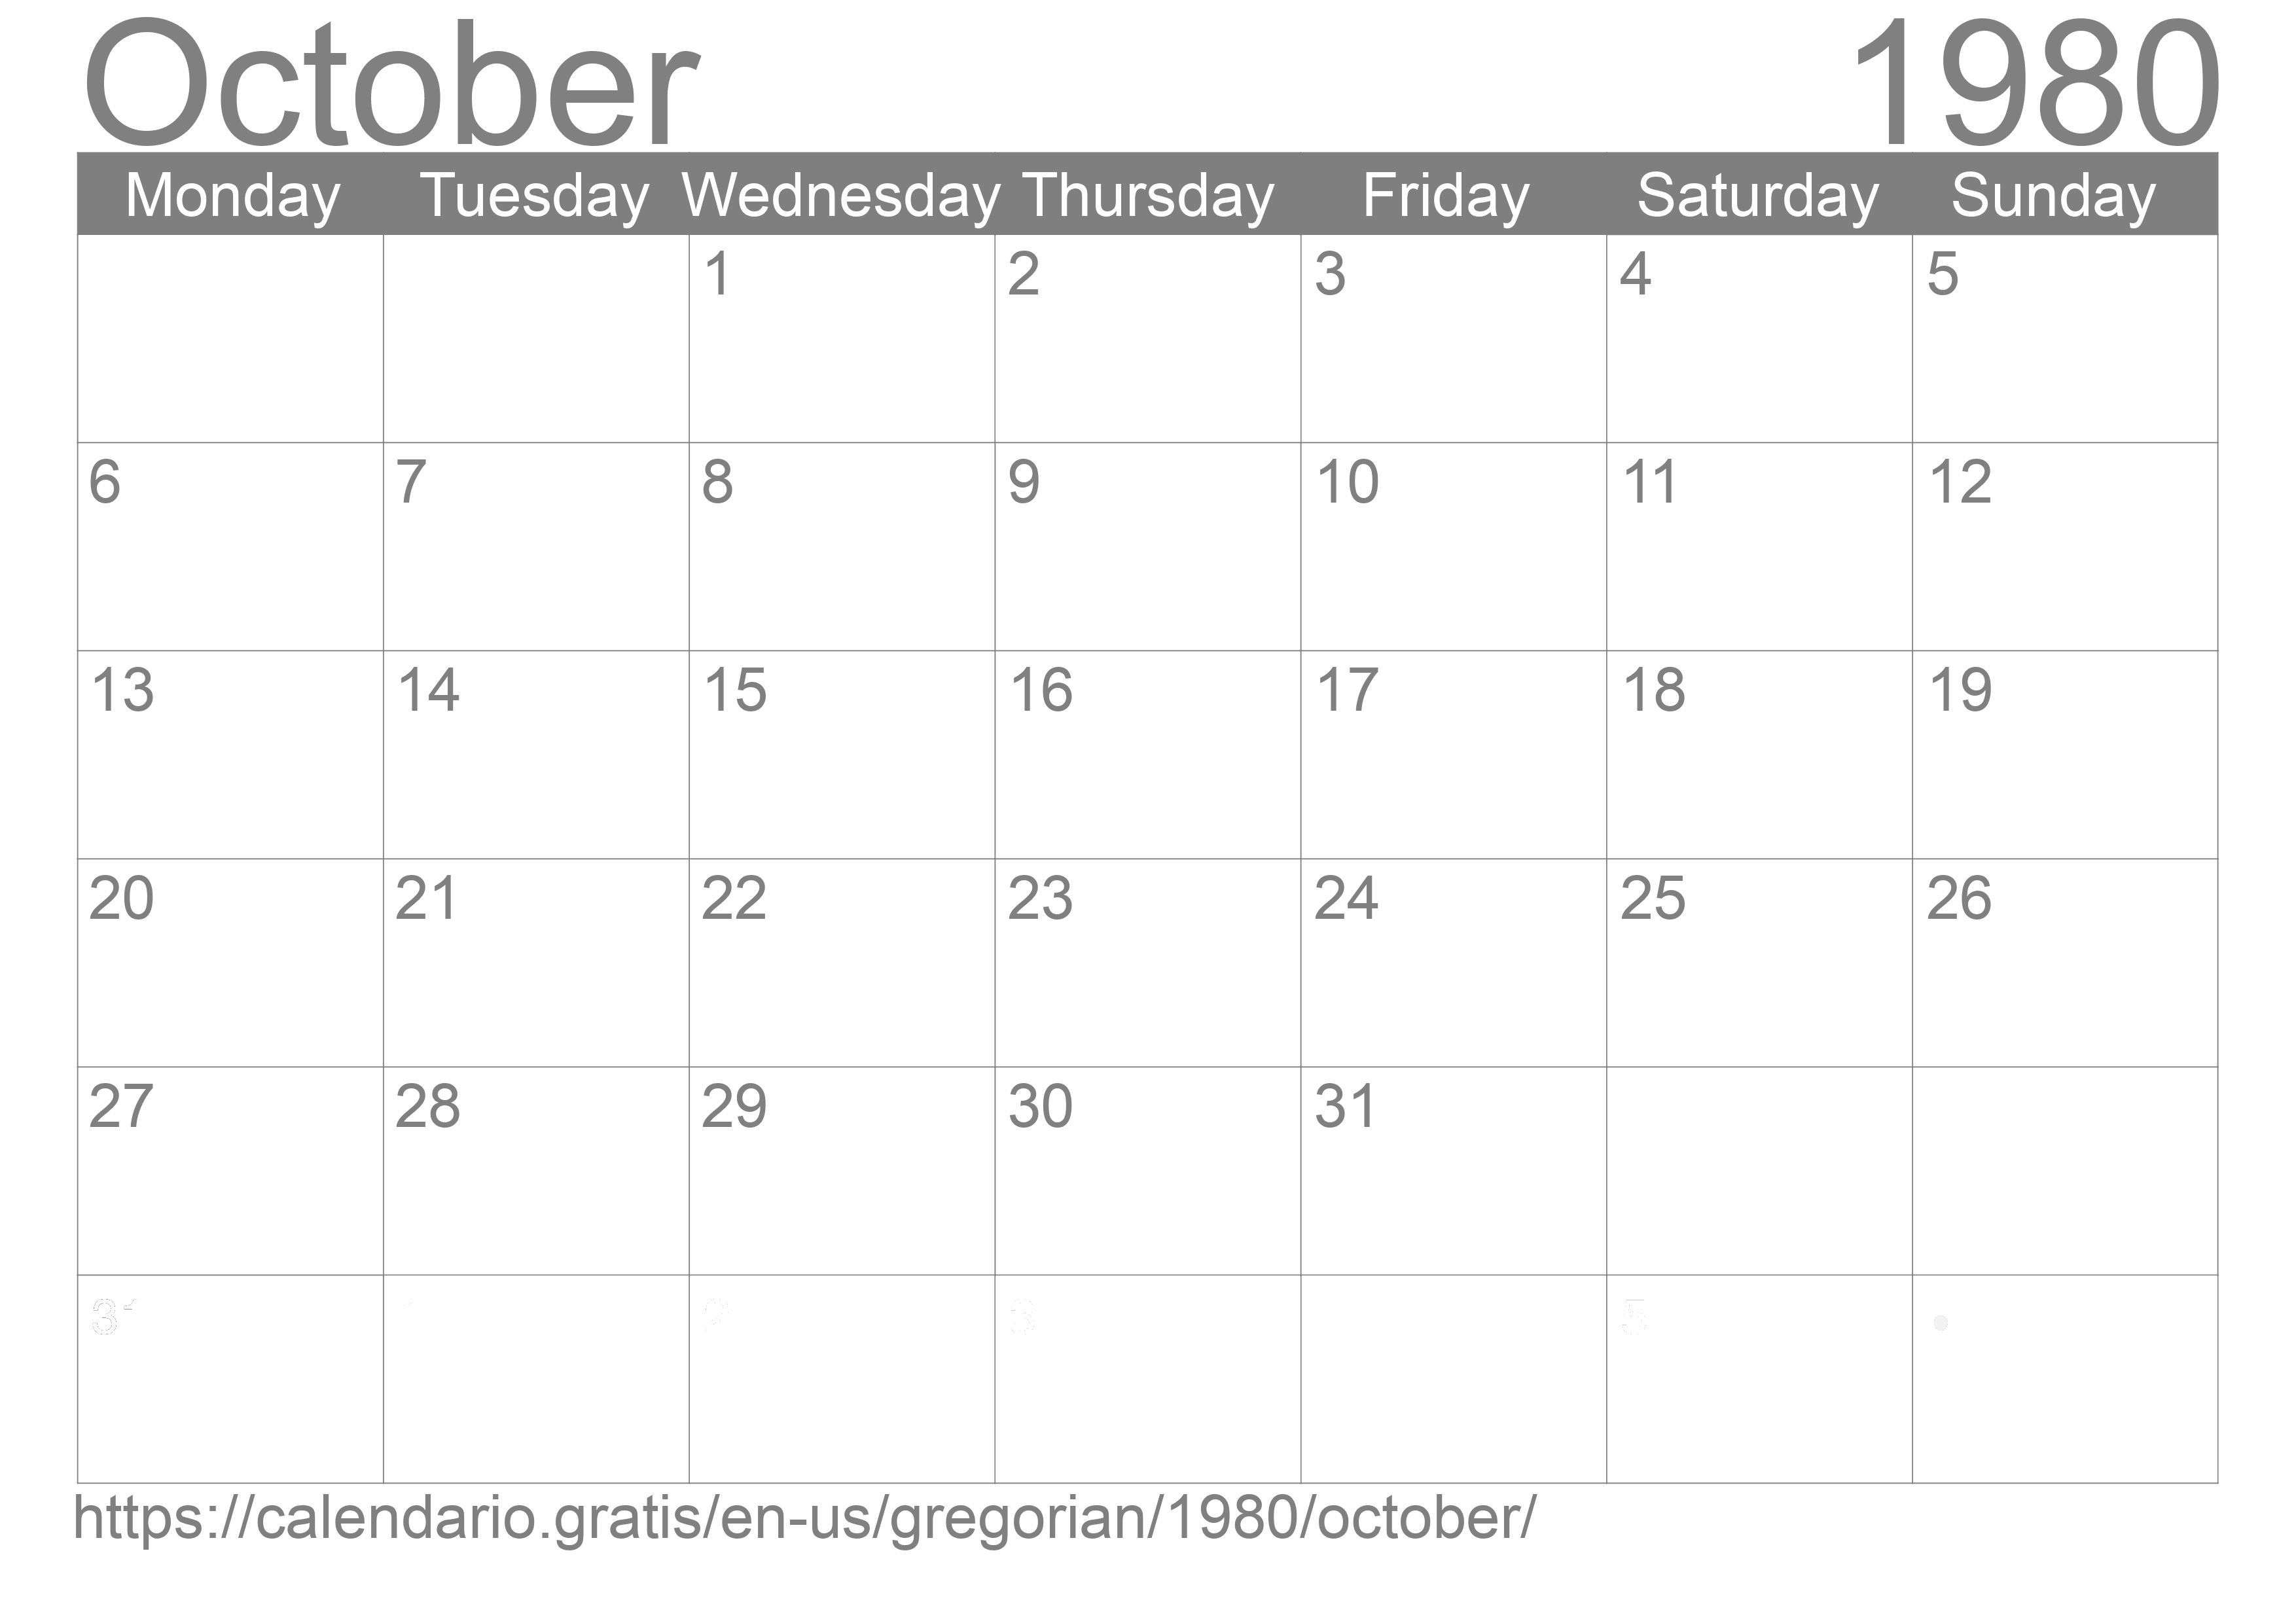 Calendar October 1980 to print